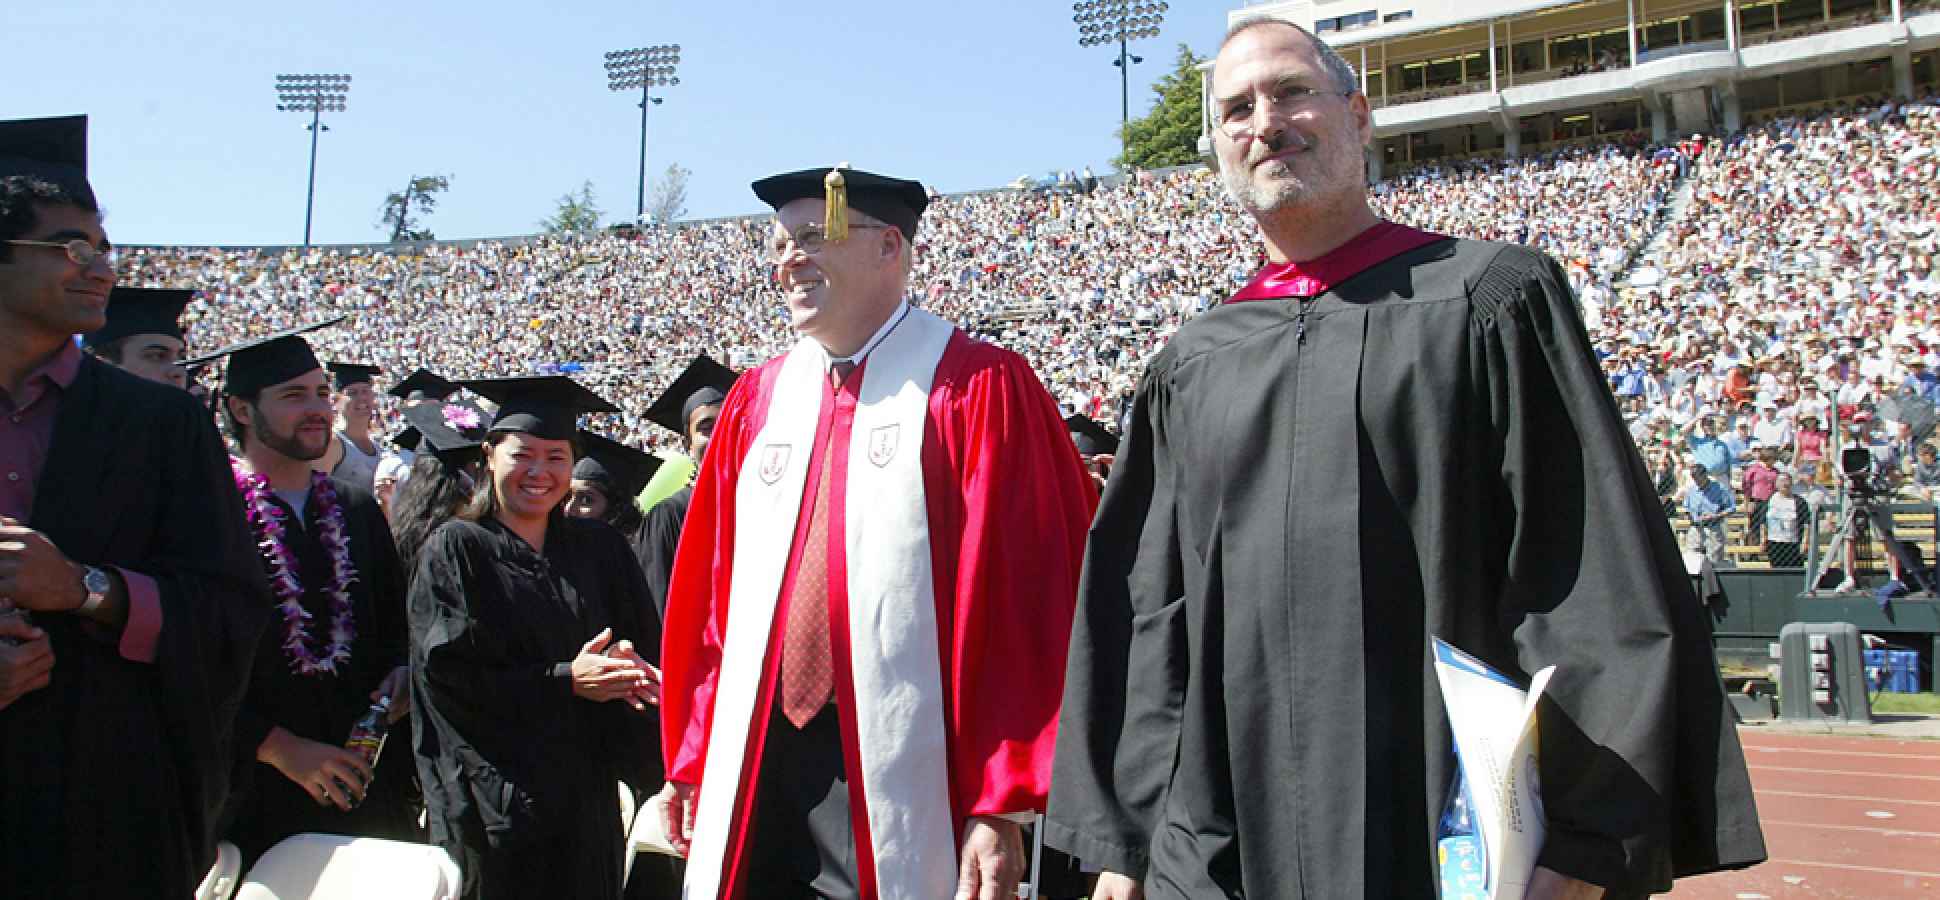 علیرغم فراوان بودن سخنرانی، کمتر سخنرانی فارغ التحصیلی می تواند به جایگاه سخنرانی استیو جابز در دانشگاه استنفورد در سال 2005 برسد.